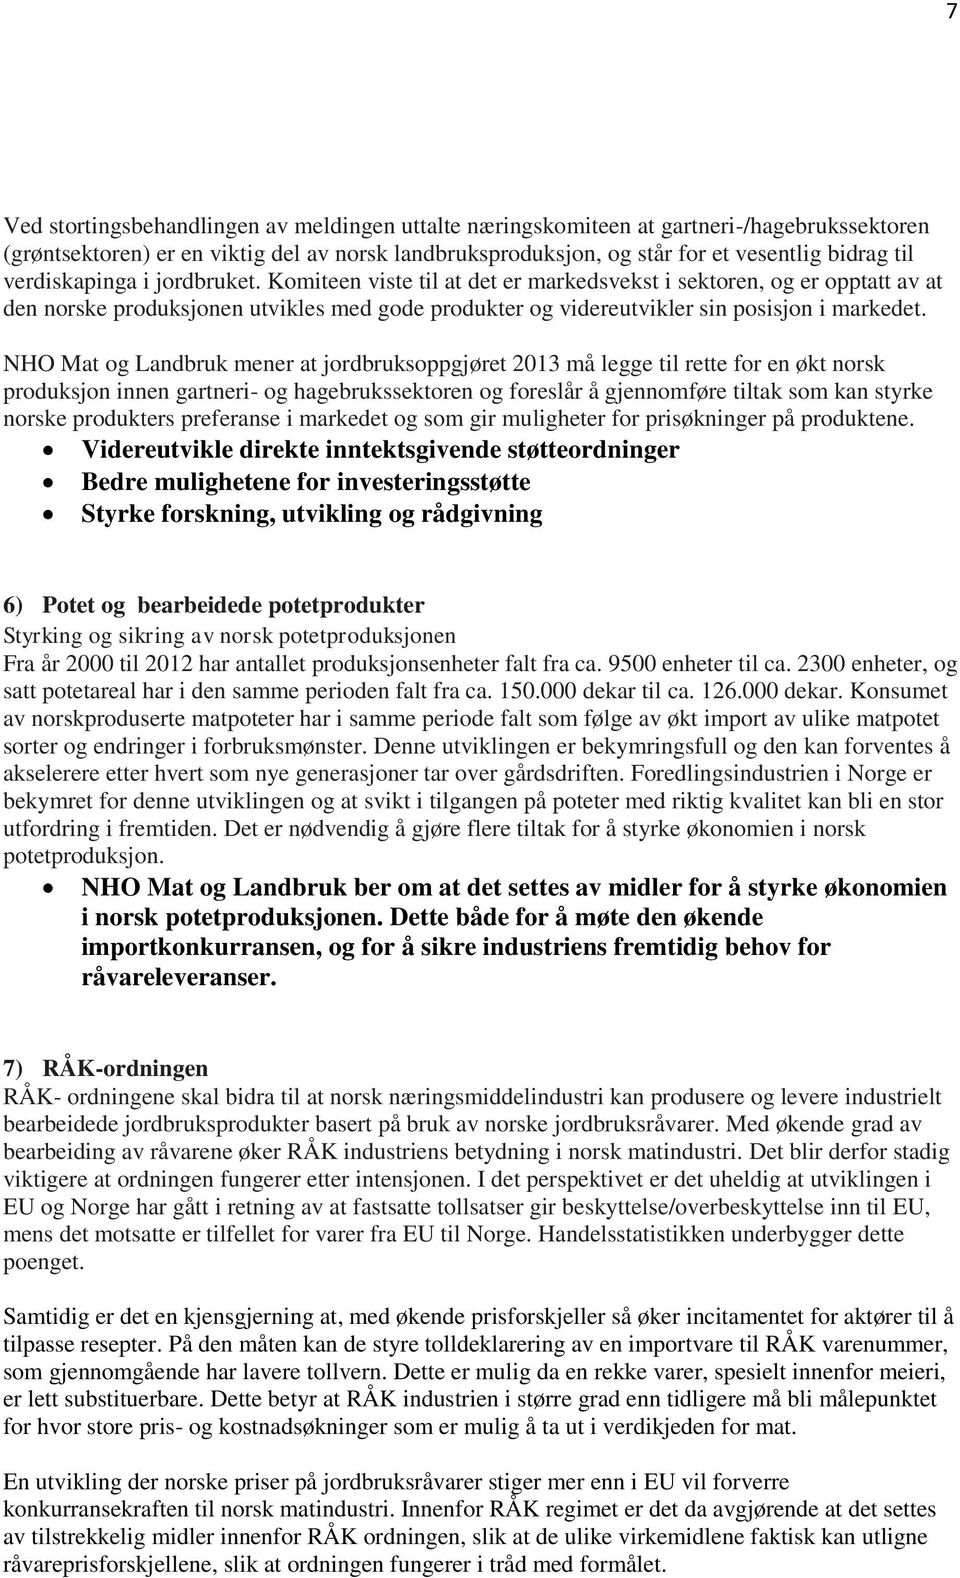 NHO Mat og Landbruk mener at jordbruksoppgjøret 2013 må legge til rette for en økt norsk produksjon innen gartneri- og hagebrukssektoren og foreslår å gjennomføre tiltak som kan styrke norske